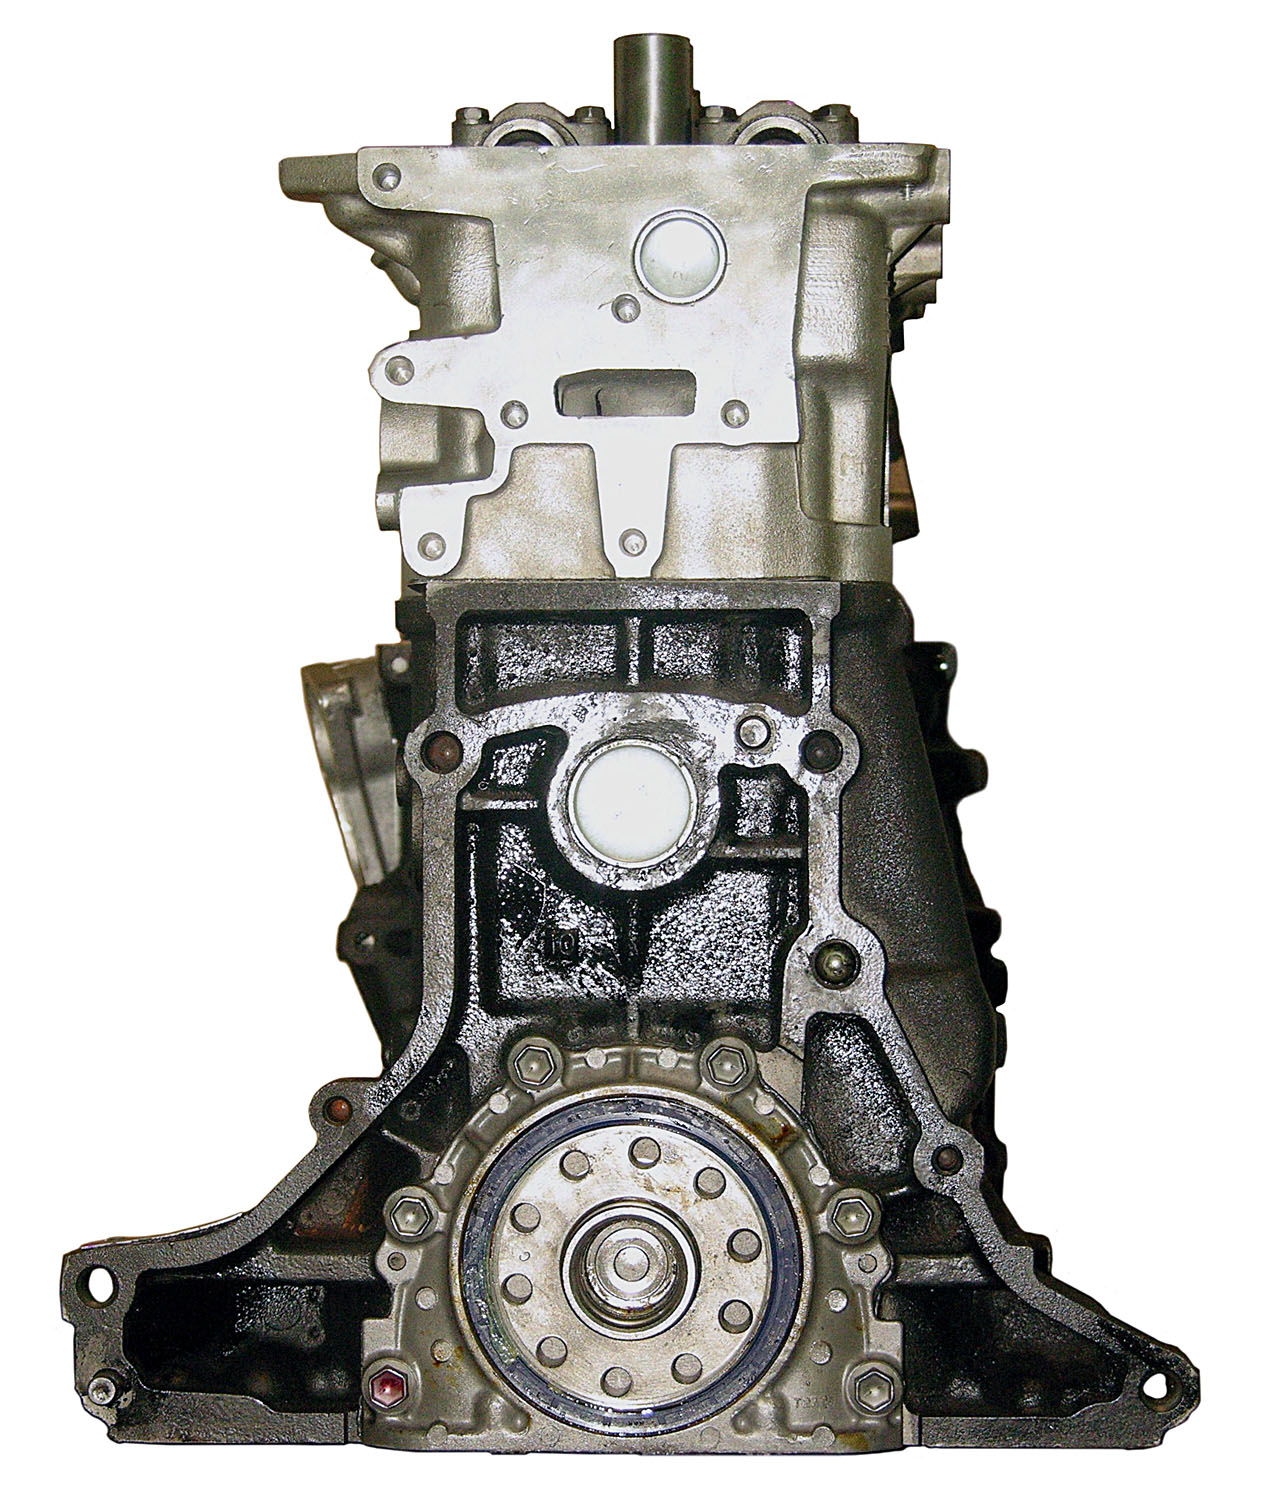 Toyota 2RZF-E 2.4L L4 Remanufactured Engine - 6/97-8/00